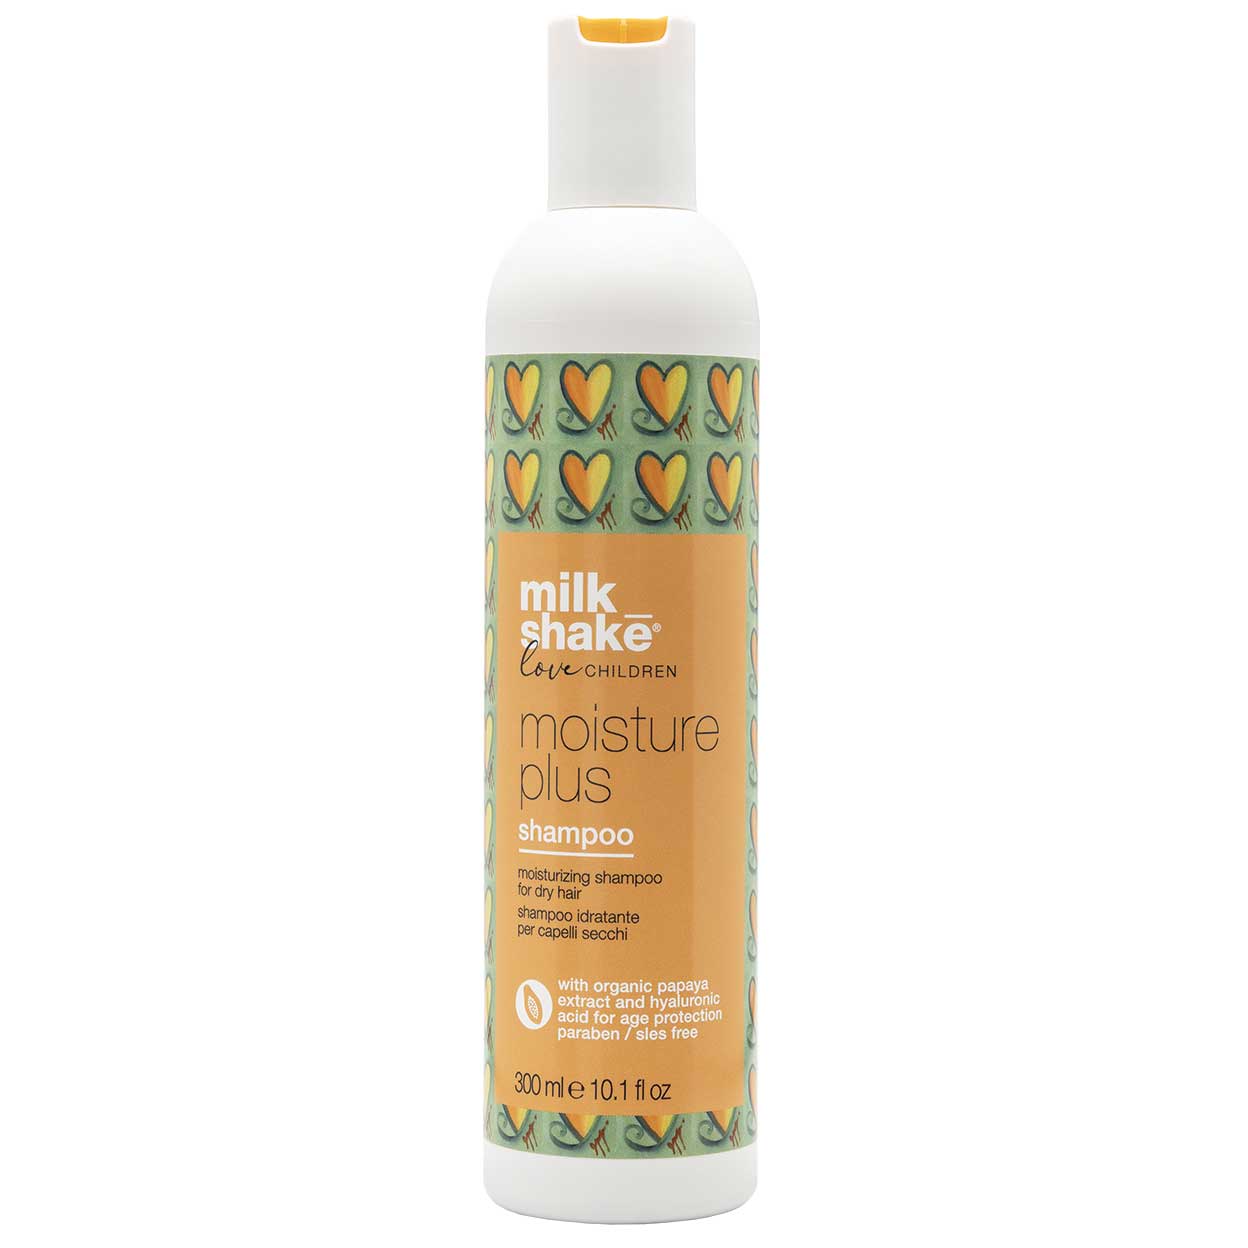 milk_shake love children moisture plus shampoo – USA